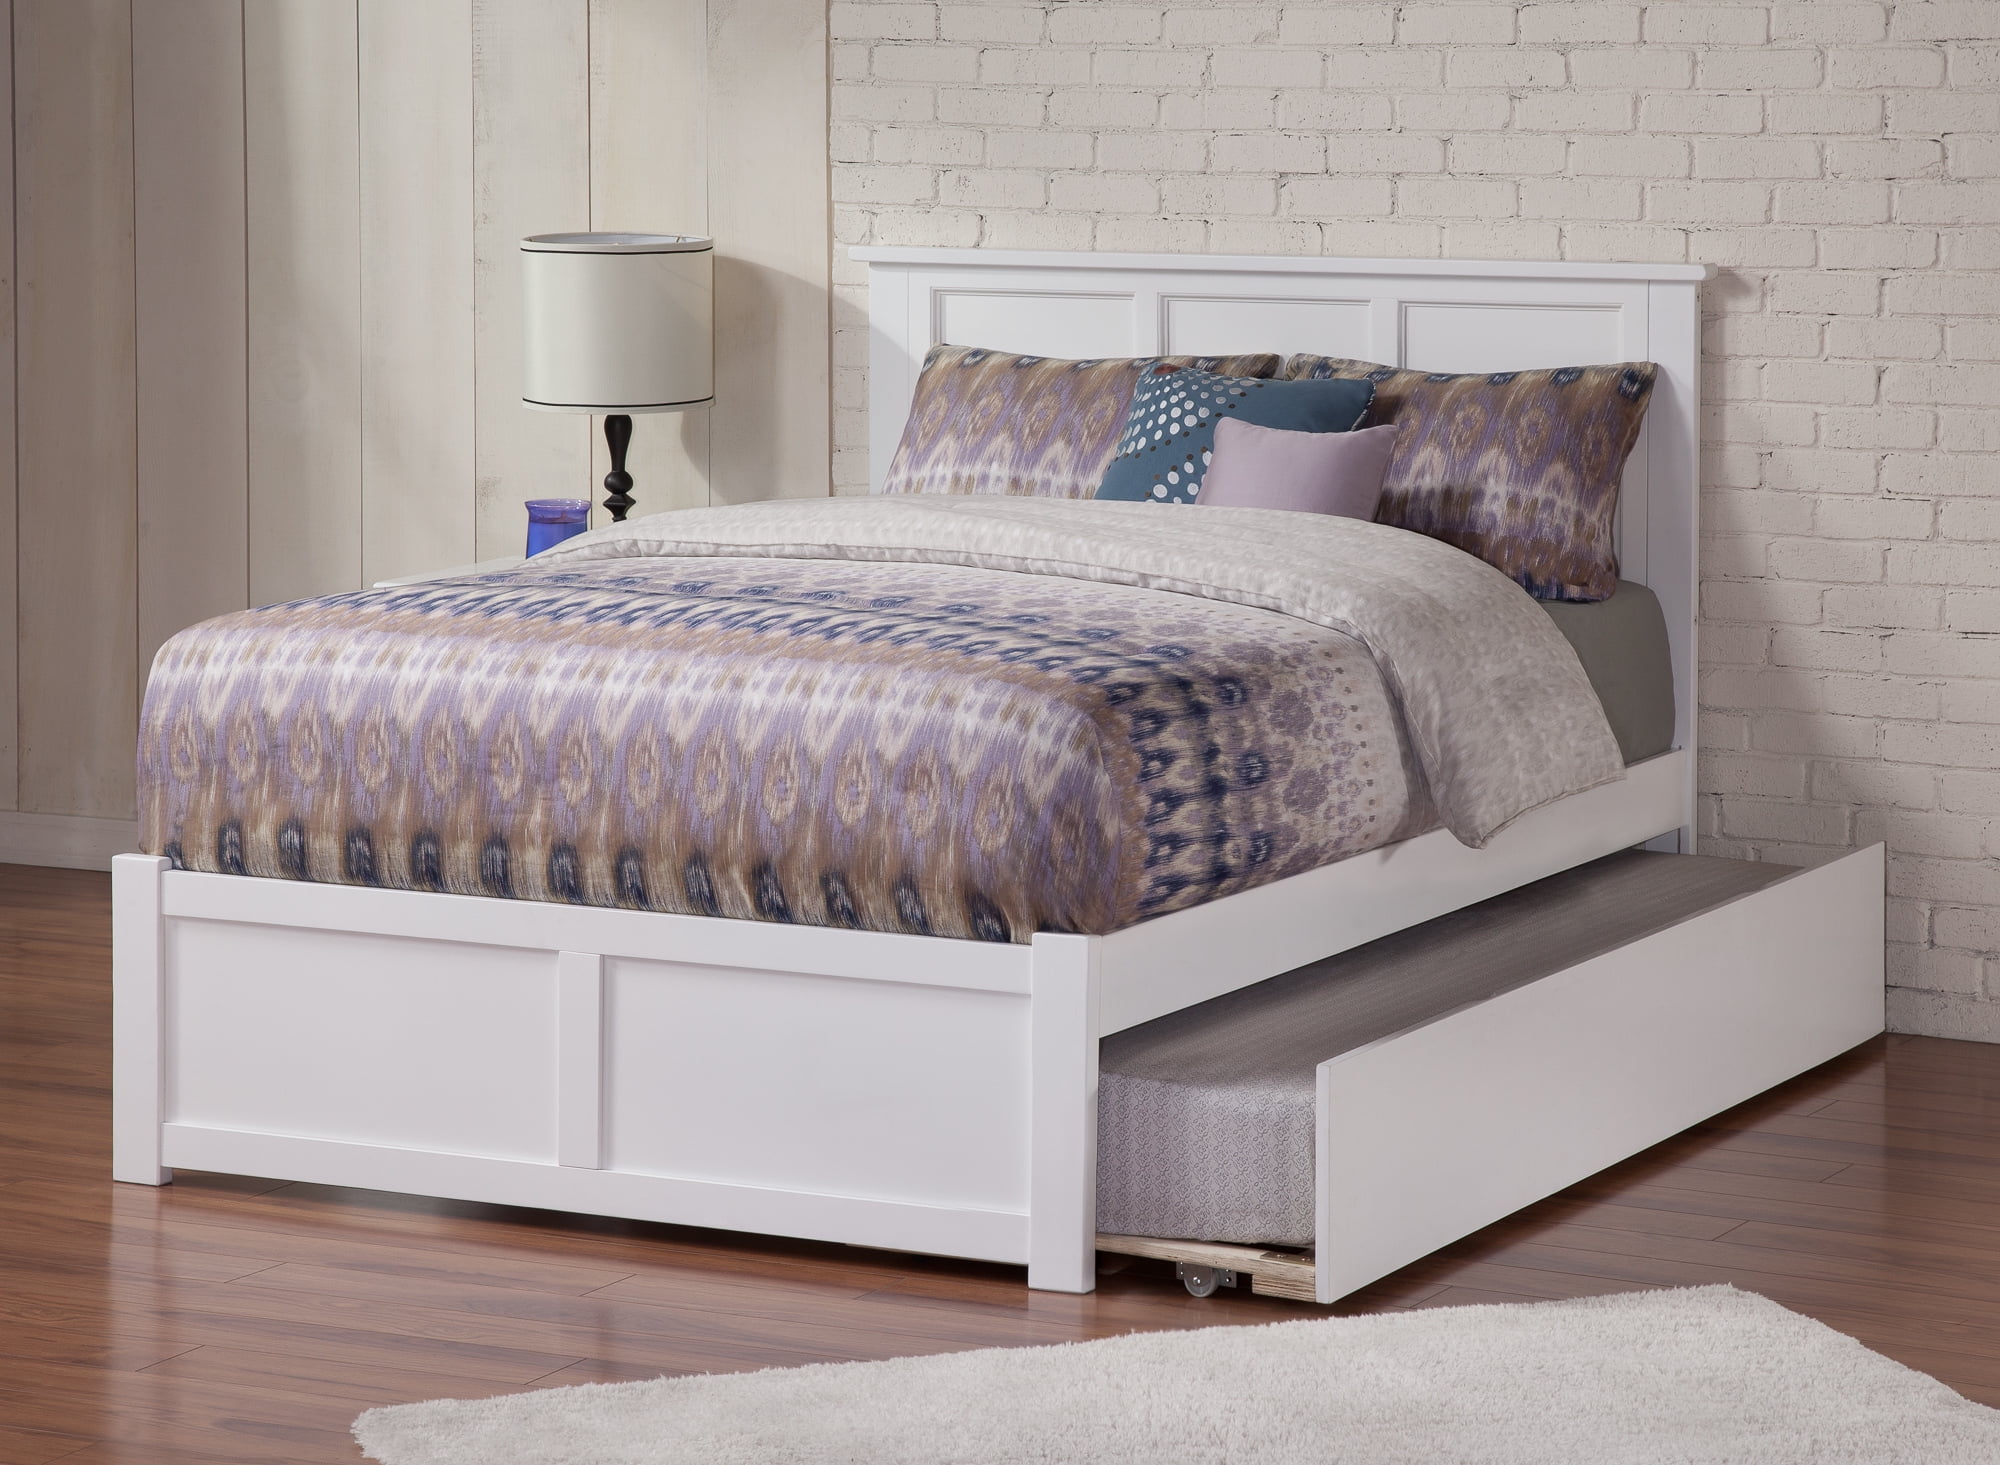 mattress firm full size platform bed